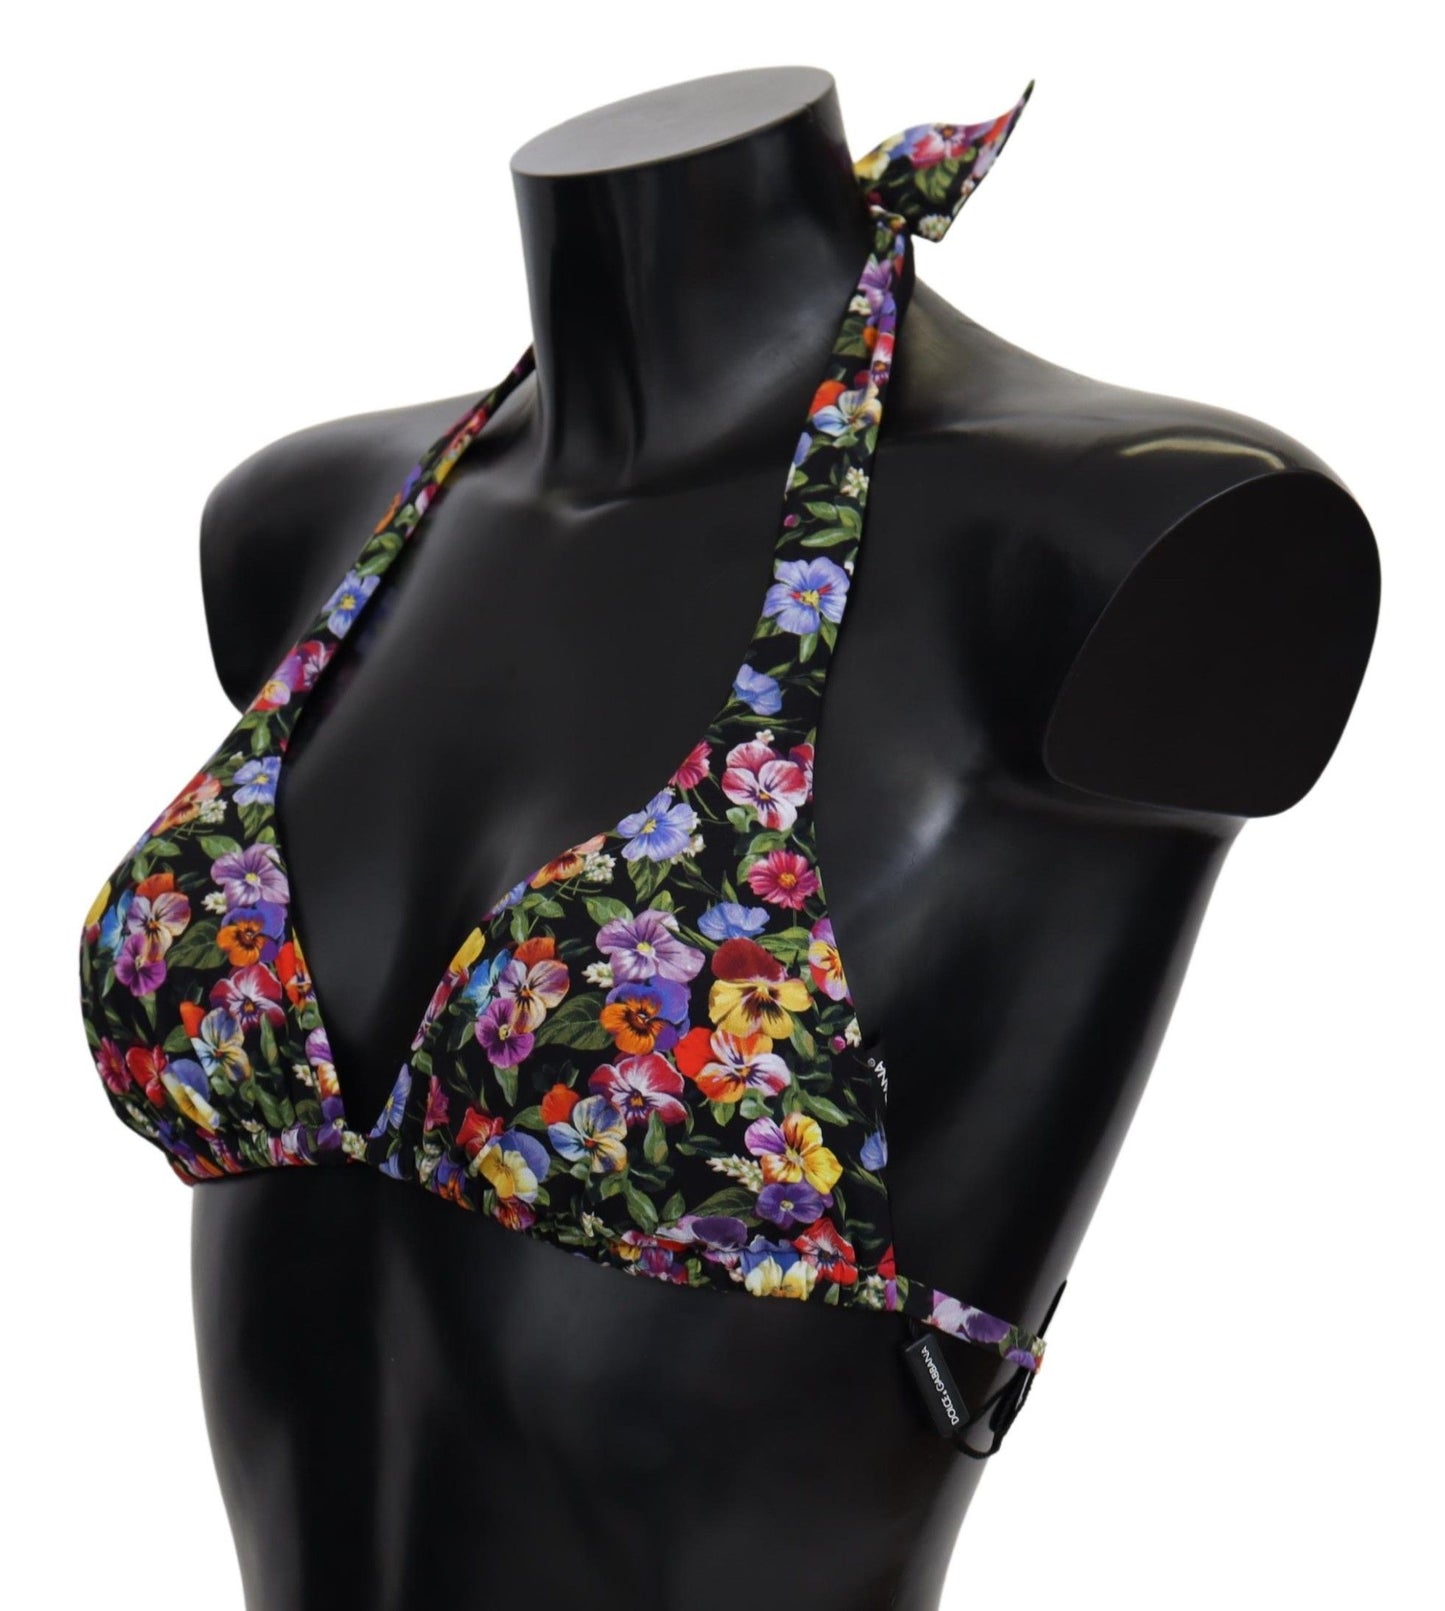 Chic Floral Printed Bikini Top